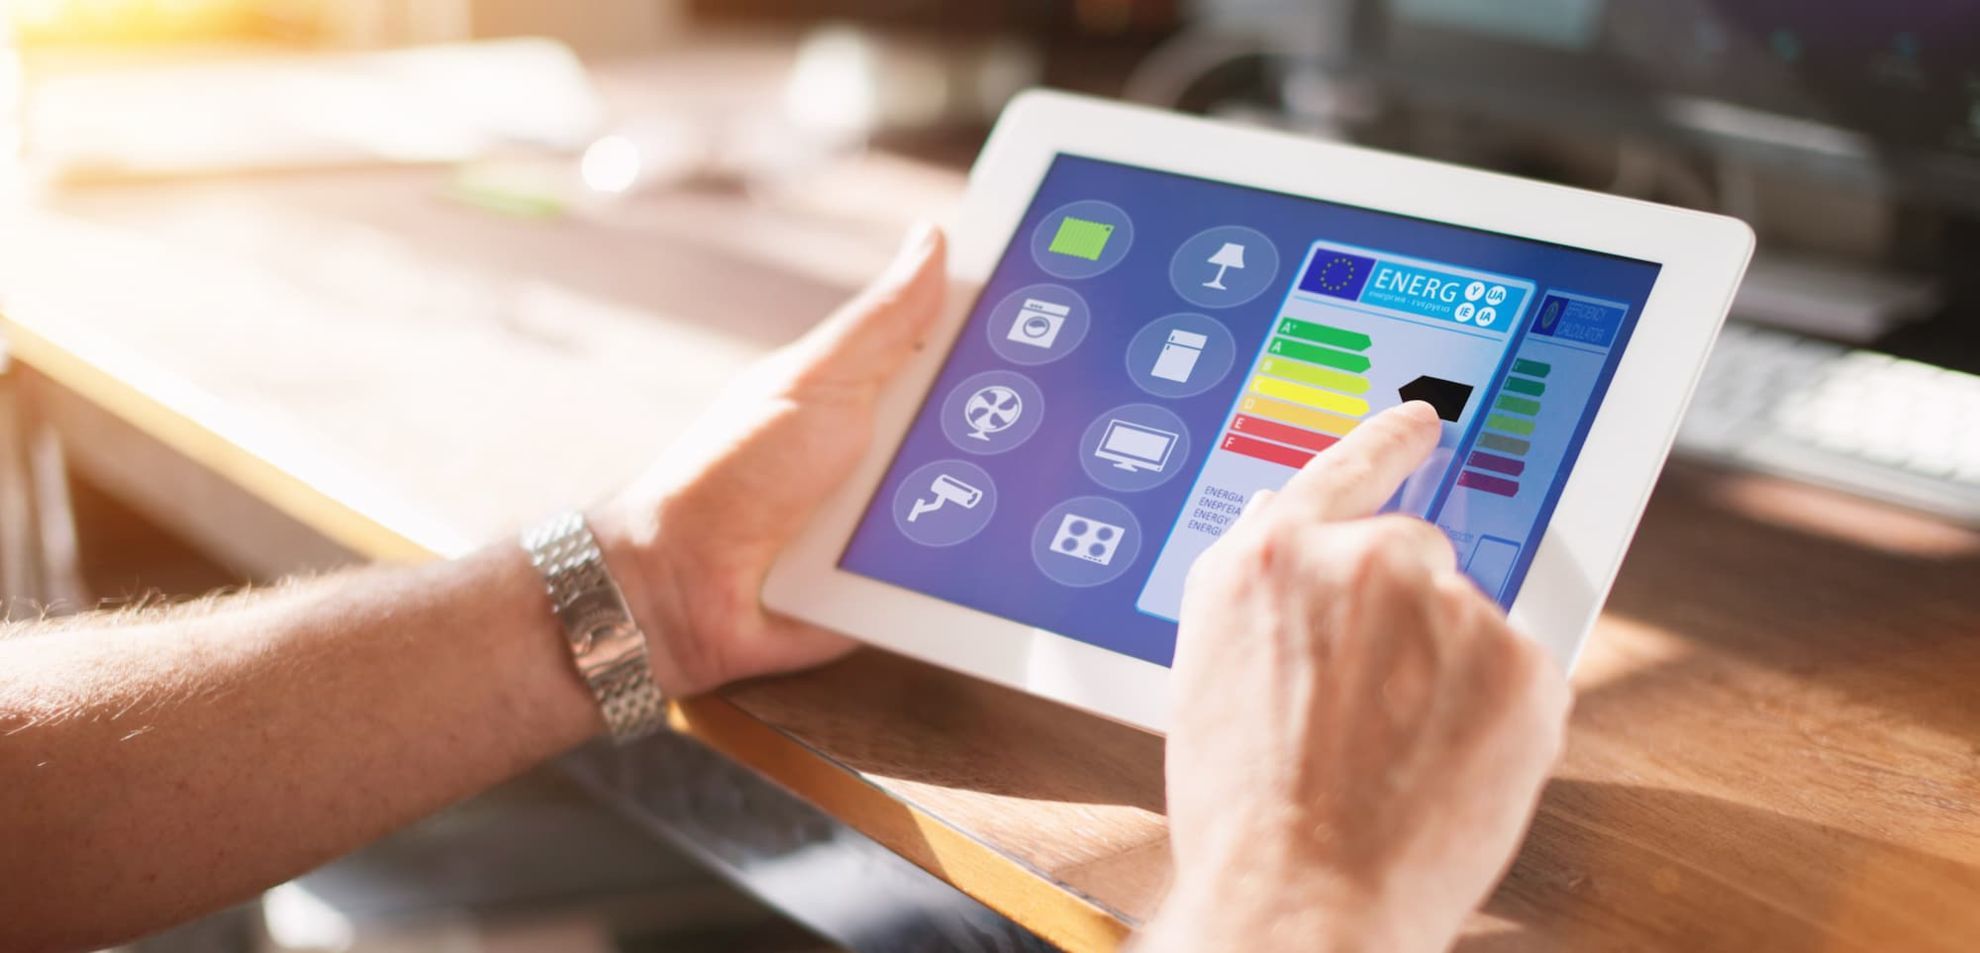 Zwei Hände halten ein Tablet. Auf dem Display können Smart-Home Einstellungen vorgenommen werden.